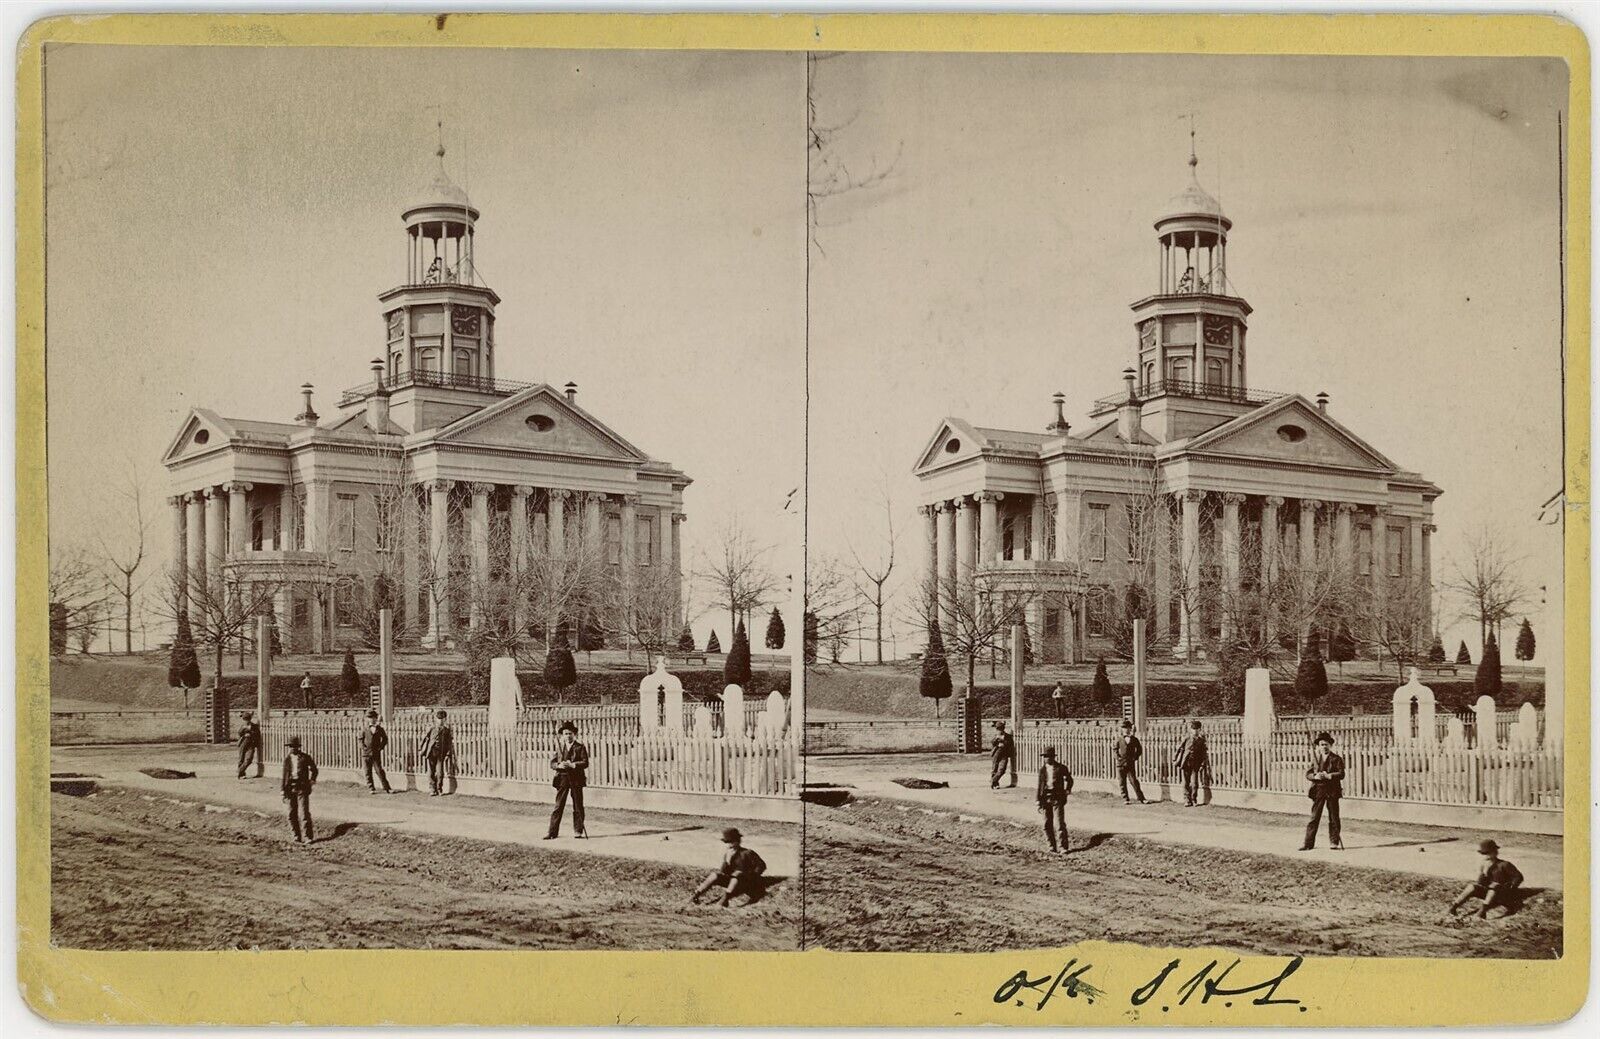 MISSISSIPPI SV - Vicksburg Courthouse - AL Blanks 1880s RARE